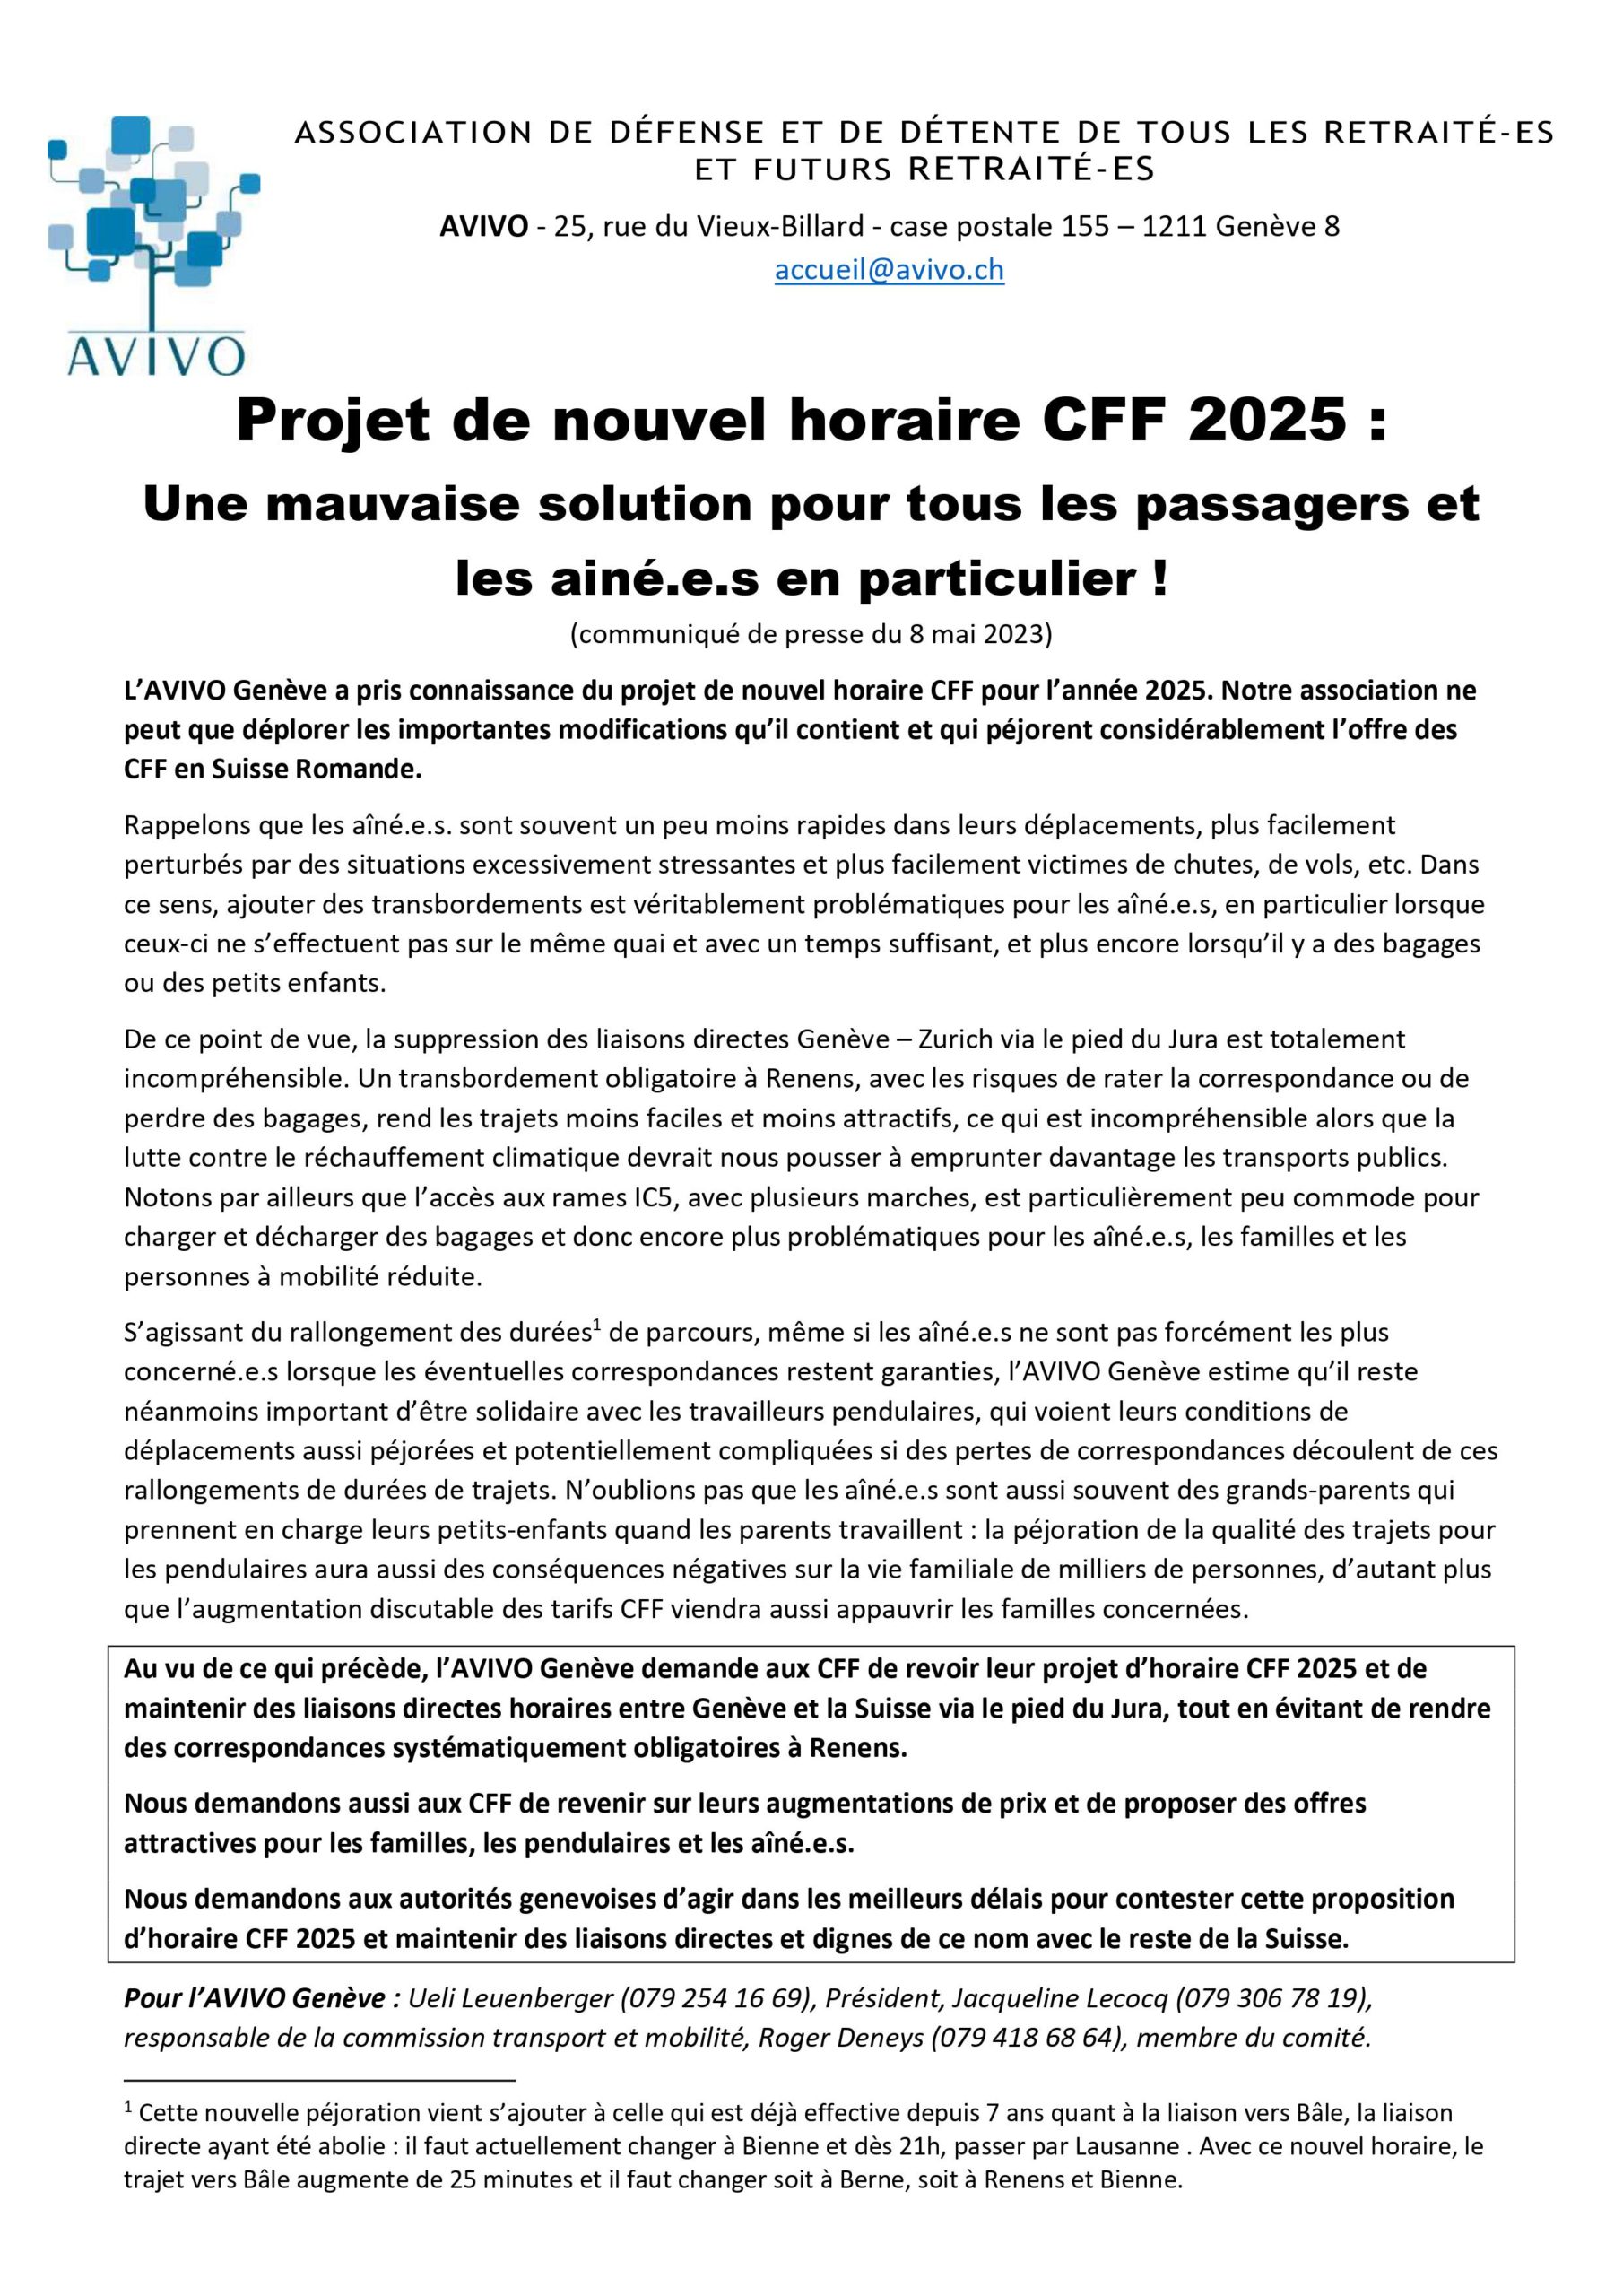 AVIVO-Communiqué de presse horaire CFF 2025-final